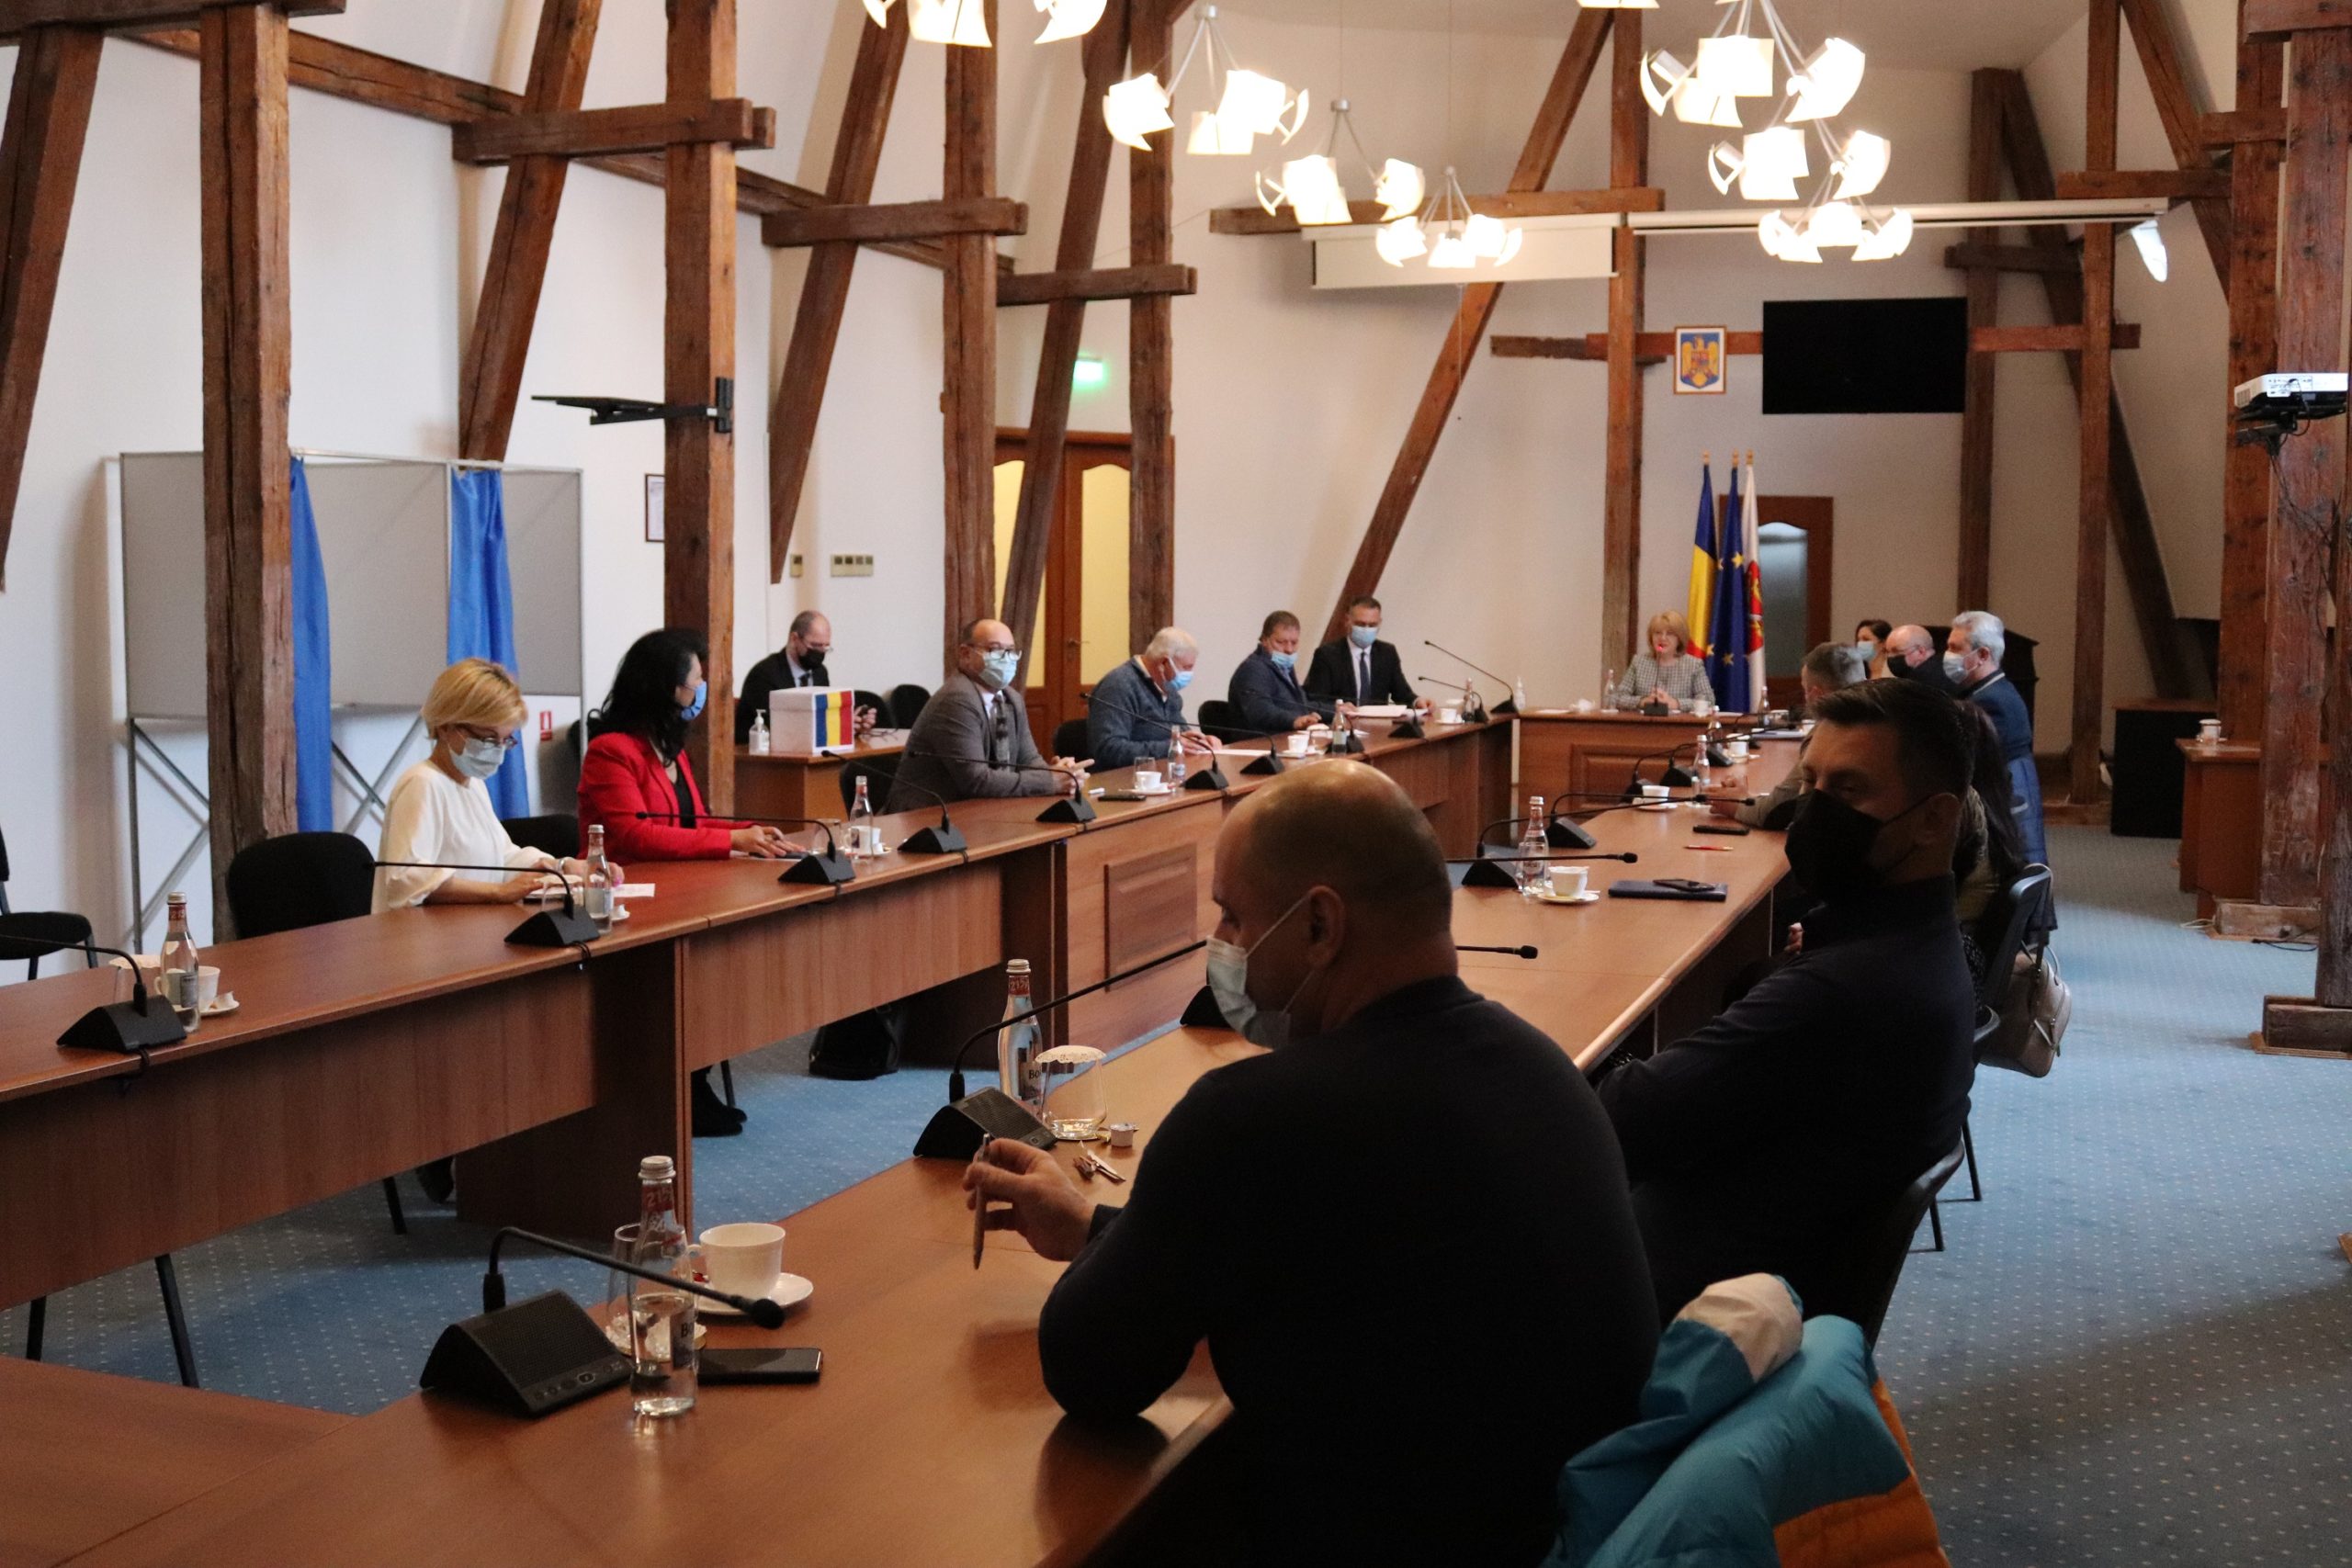 ŞTIRI SIBIU – Asociația de Dezvoltare Intercomunitară Transport Metropolitan Sibiu are statut, act constitutiv, președinte și consiliu director